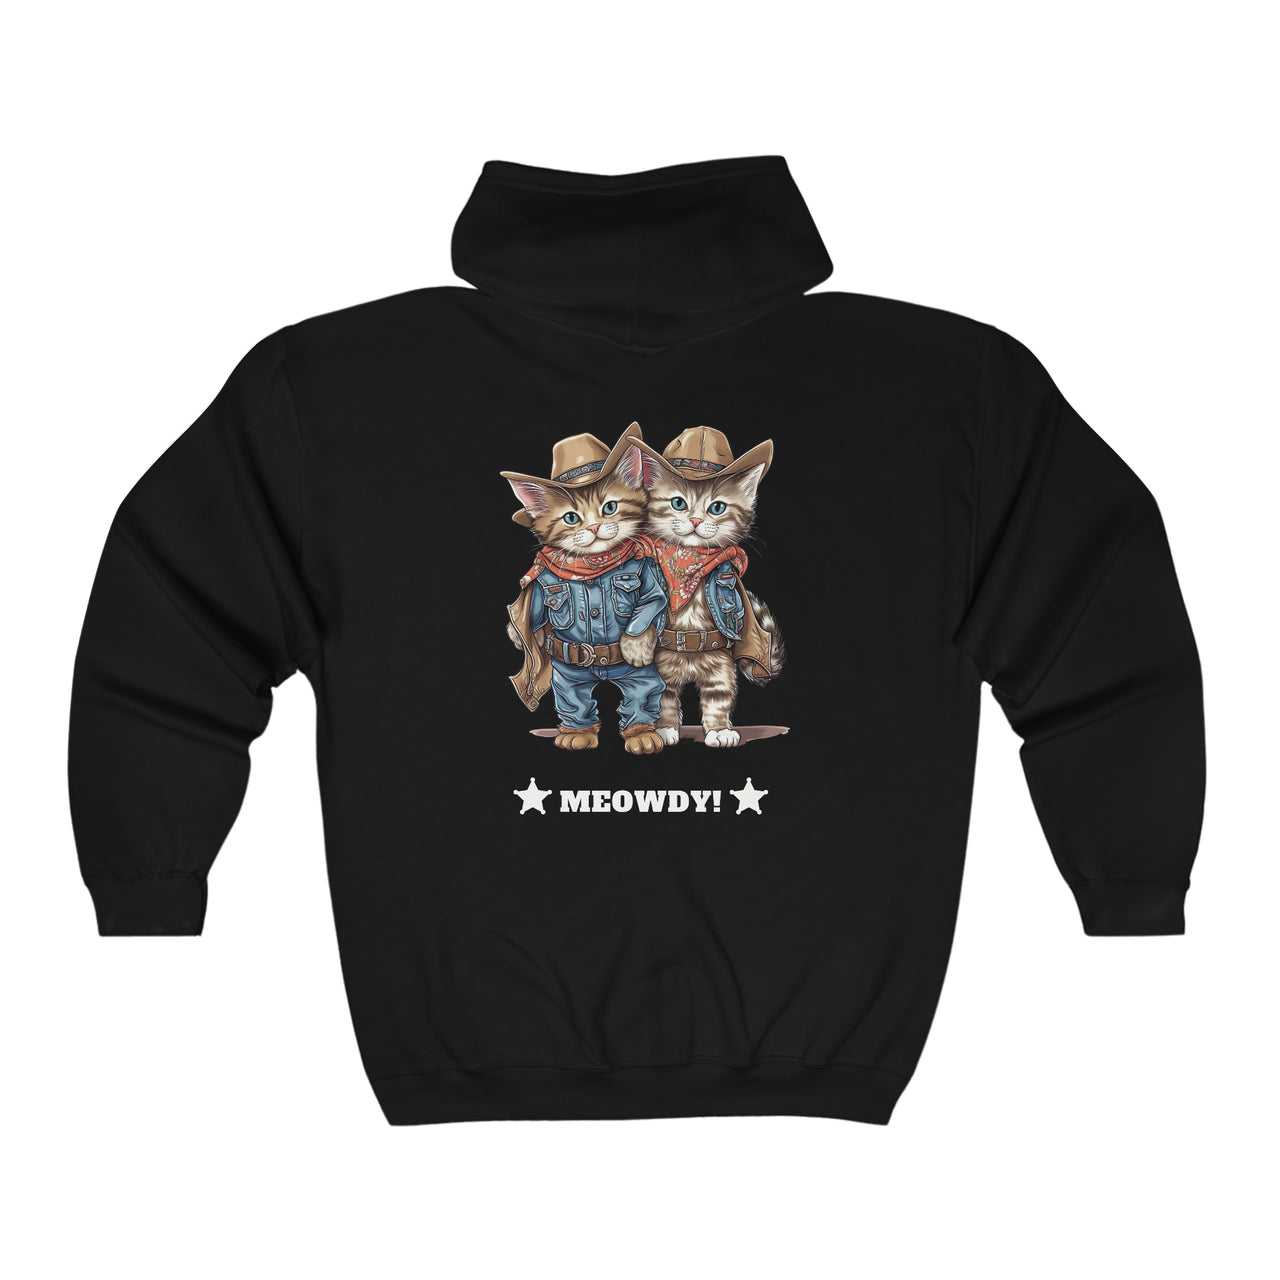 Meowdy Unisex Full Zip Hooded Sweatshirt Kittens Dressed as Cowboys-Black-Back